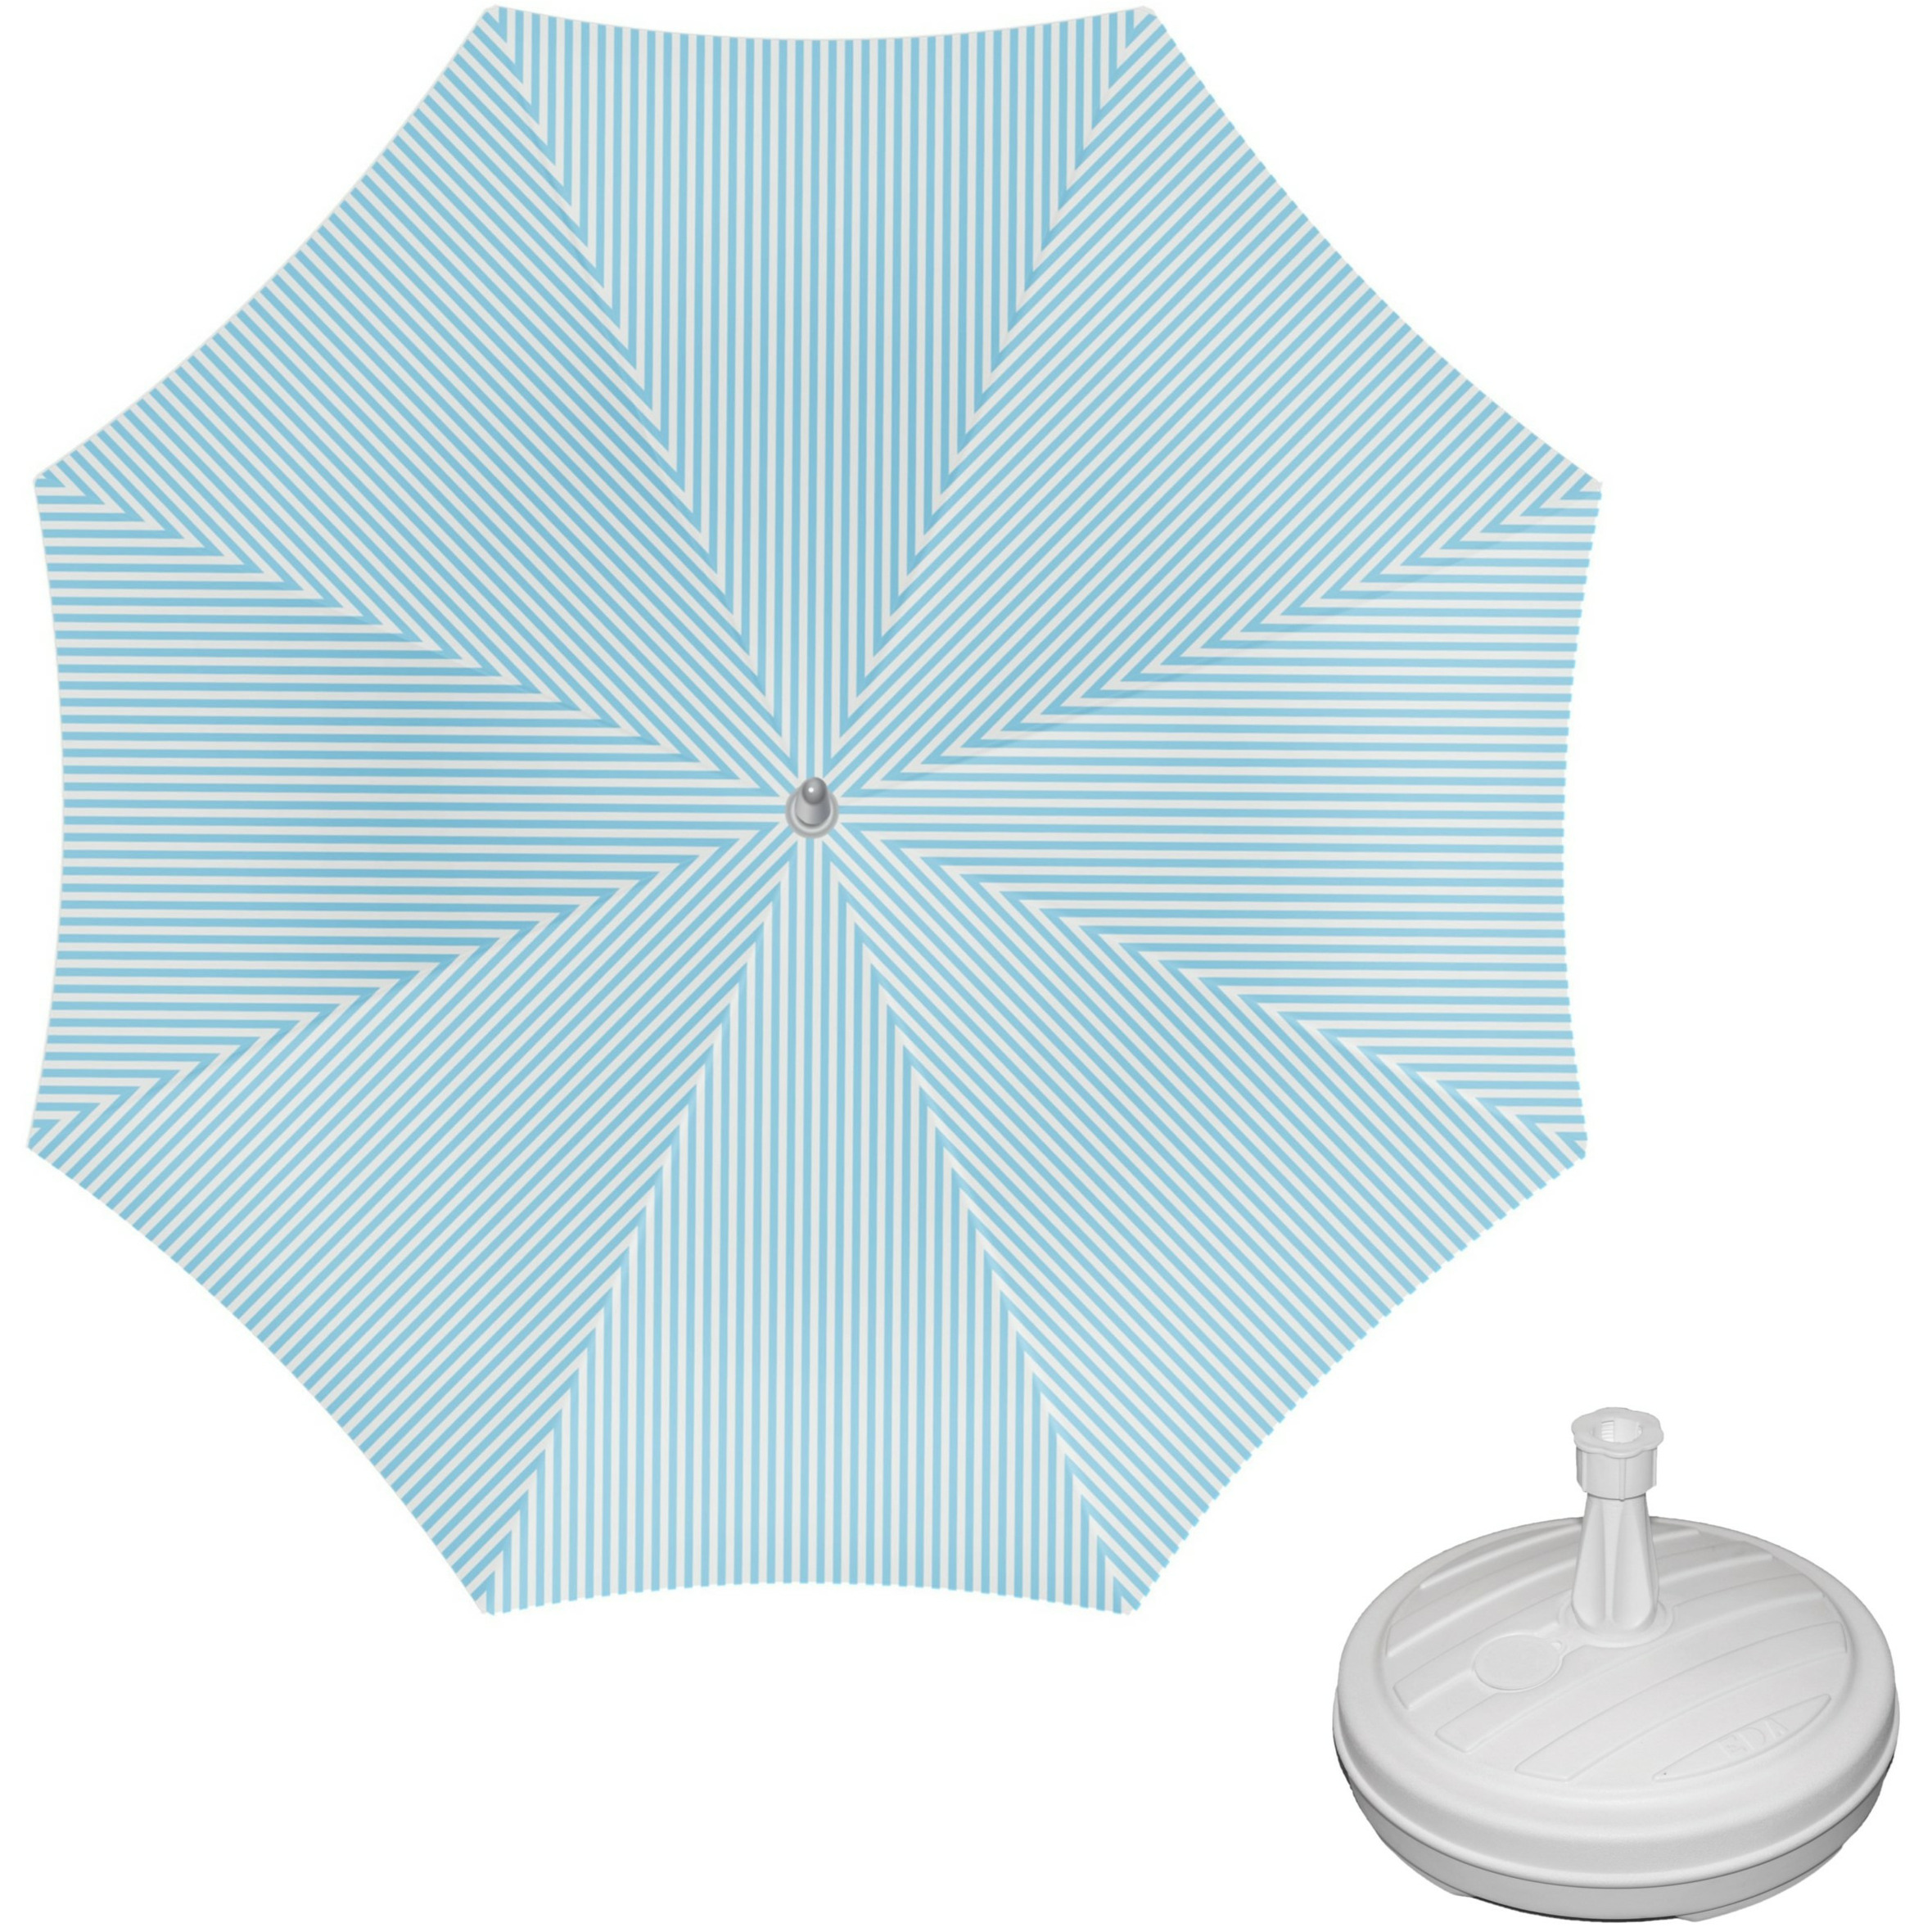 Parasol lichtblauw-wit D160 cm incl. draagtas parasolvoet 42 cm